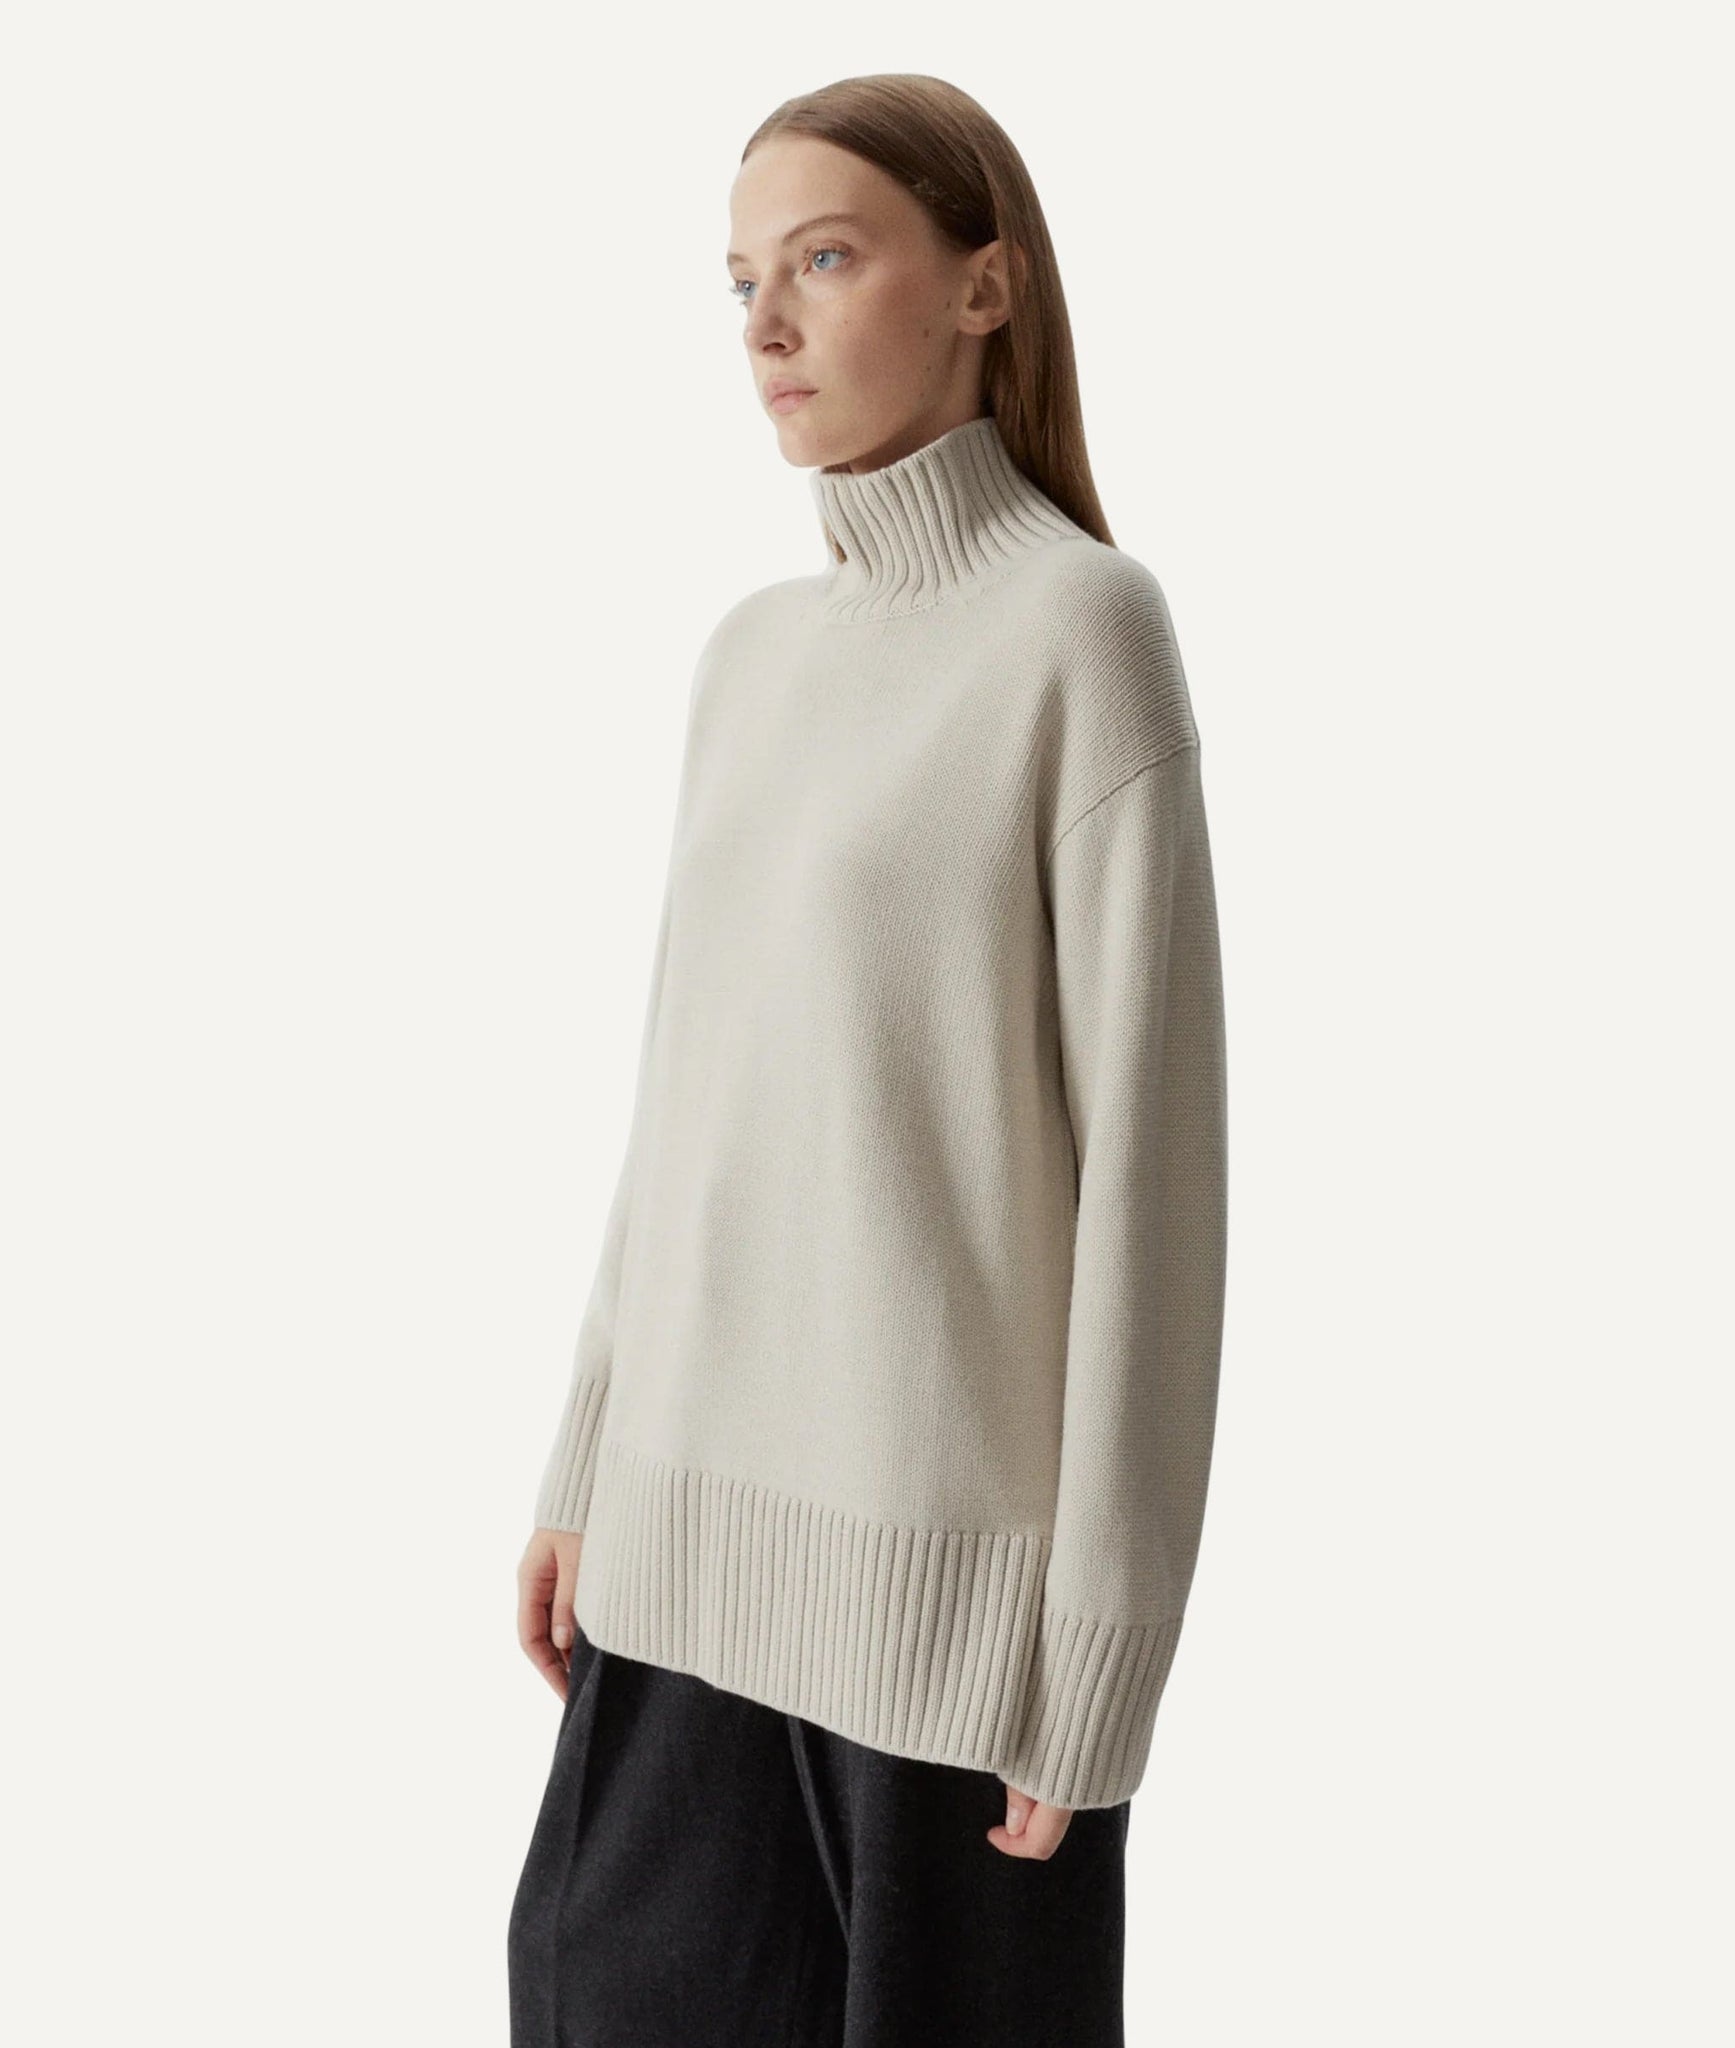 The Merino Wool Oversize High-Neck